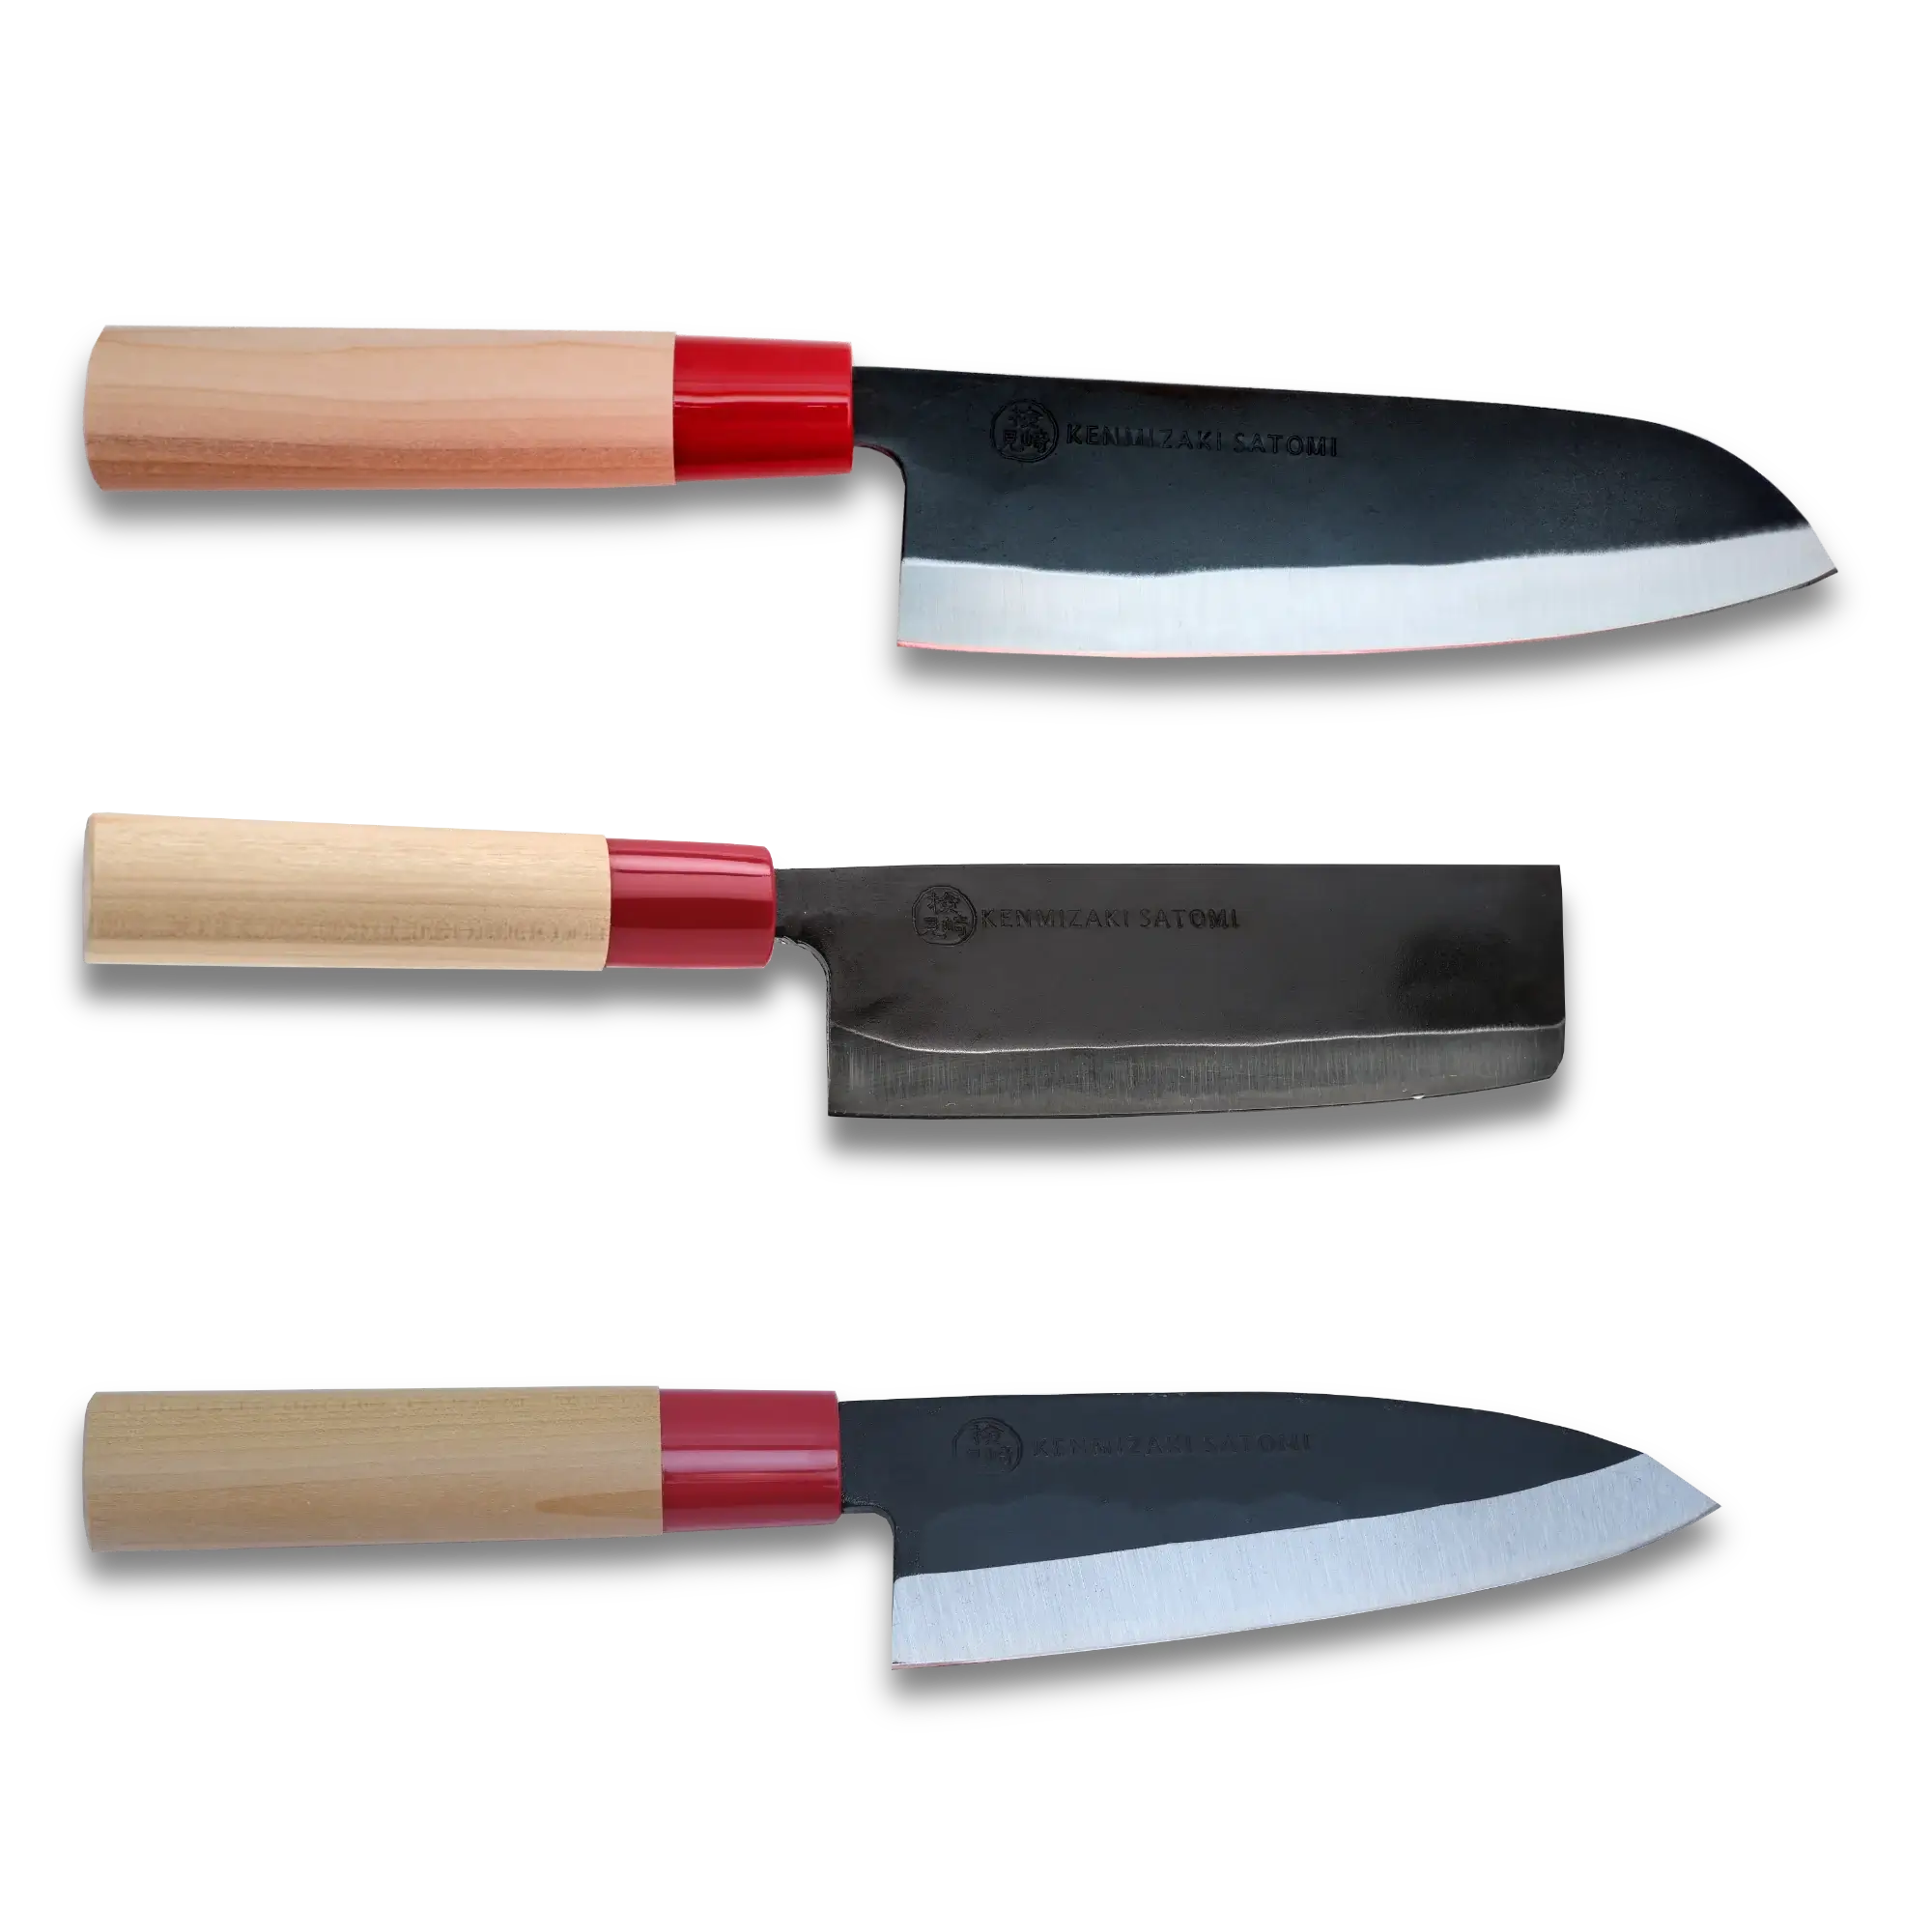 KZ-950 Ensemble de 3 couteaux essentiels | Fabriqué au Japon